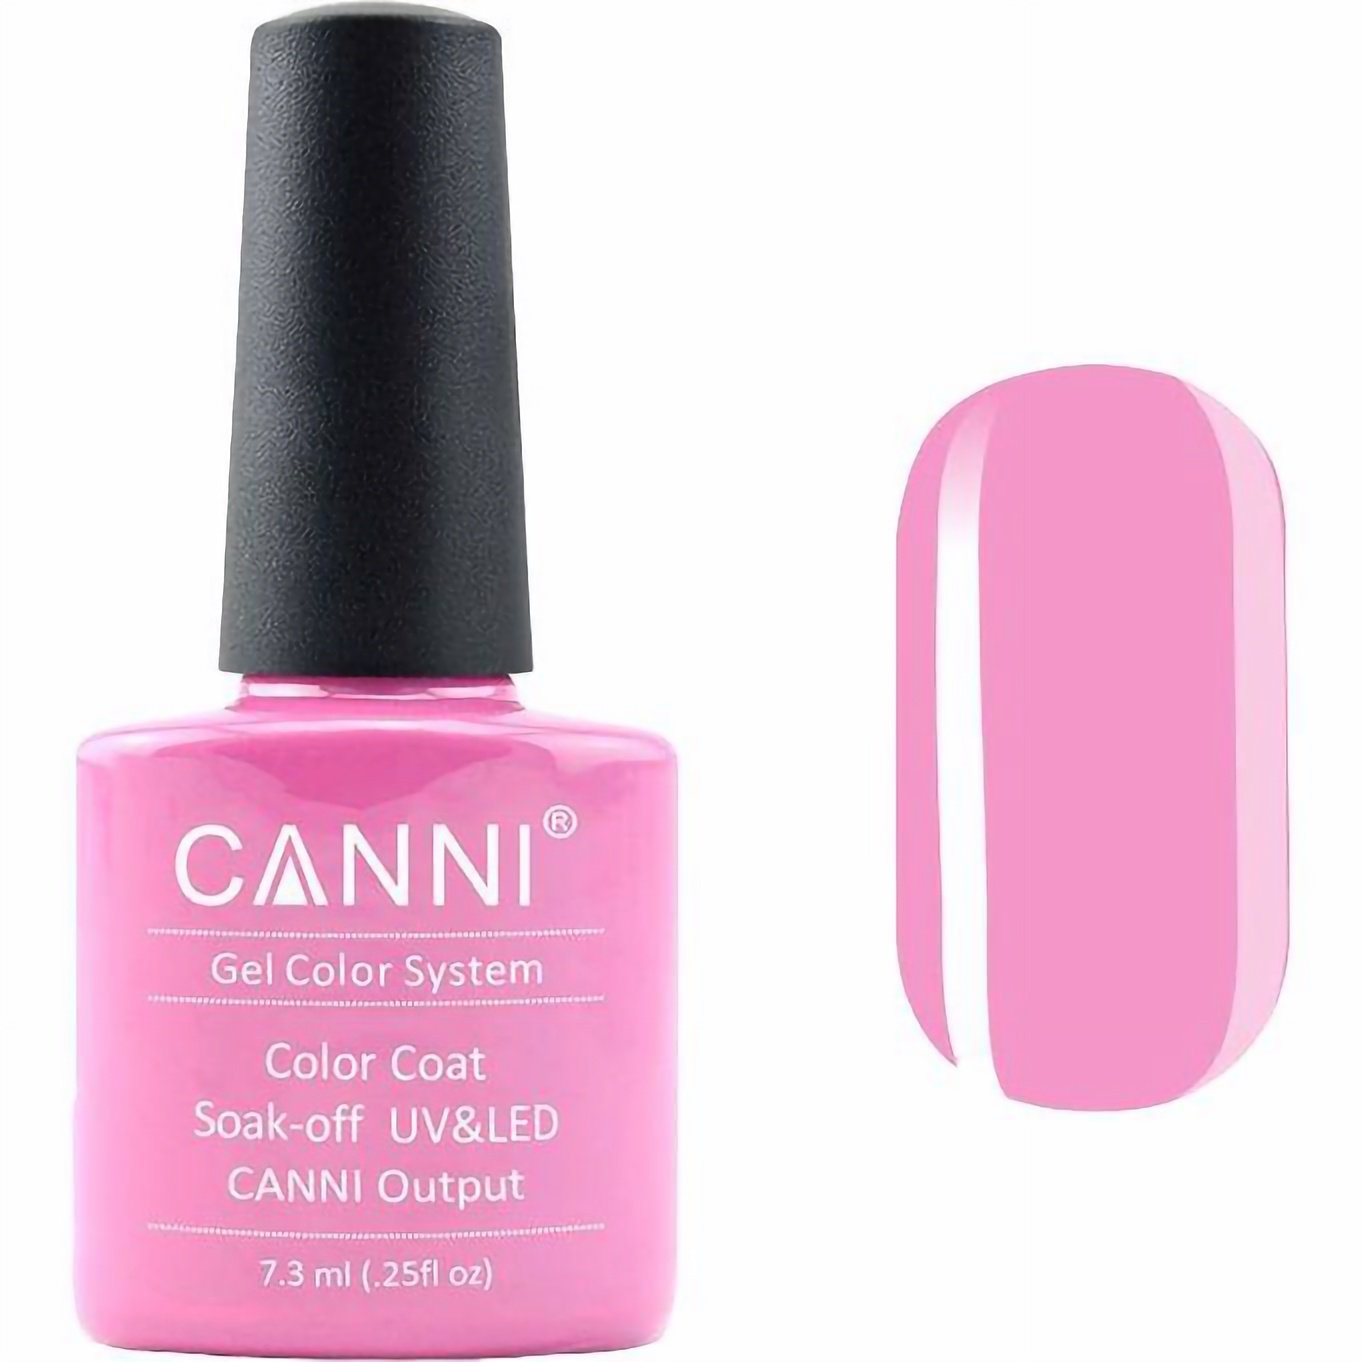 Гель-лак Canni Color Coat Soak-off UV&LED 238 лилово-розовый 7.3 мл - фото 1